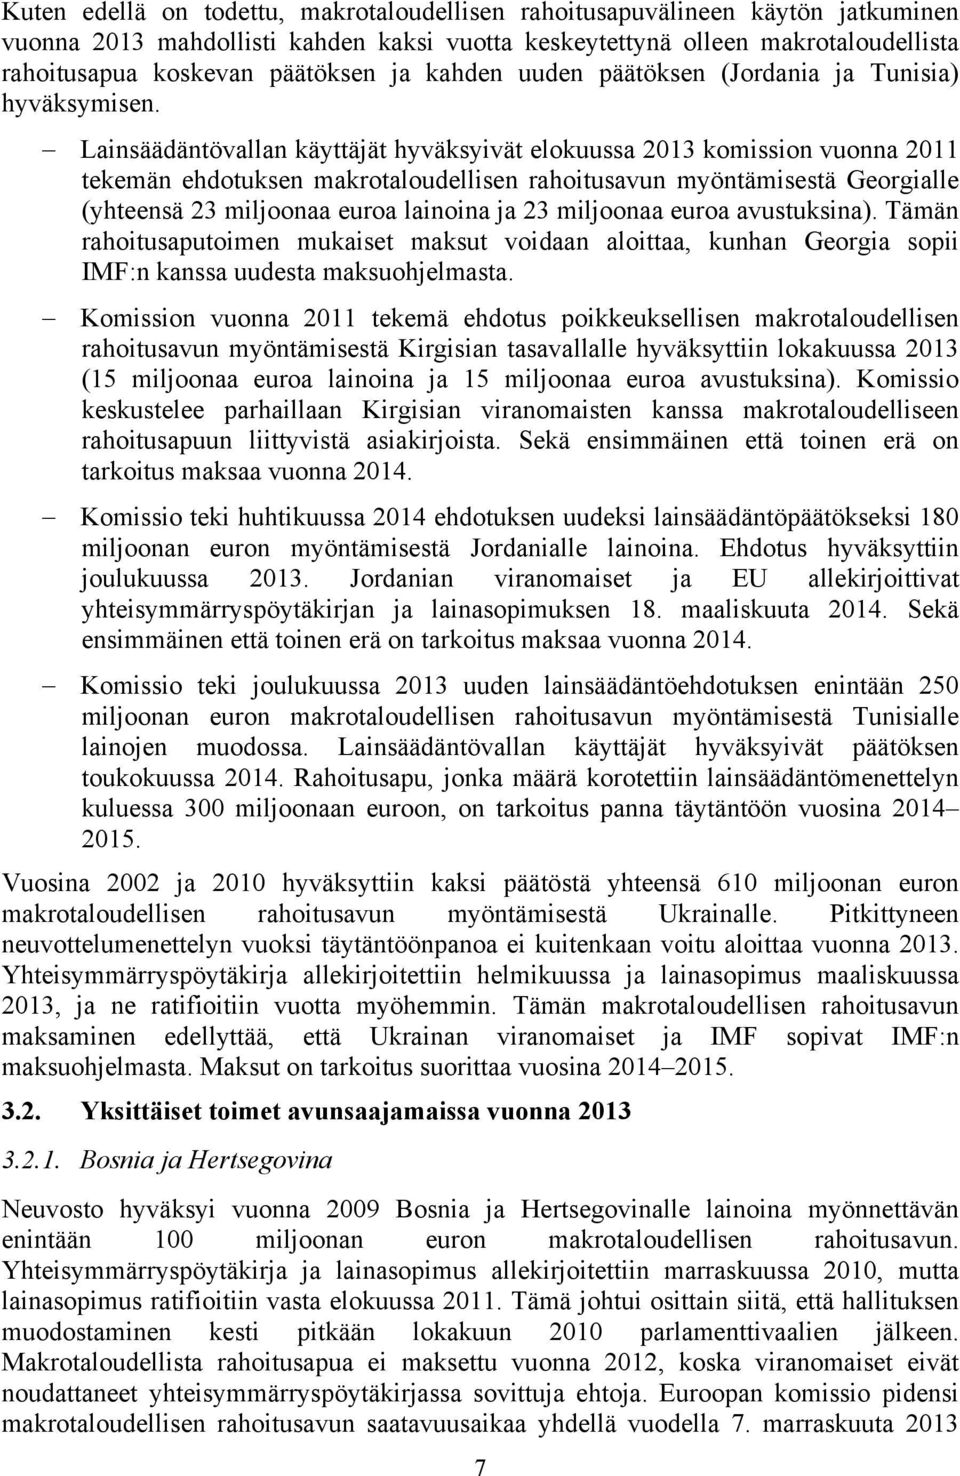 Lainsäädäntövallan käyttäjät hyväksyivät elokuussa 2013 komission vuonna 2011 tekemän ehdotuksen makrotaloudellisen rahoitusavun myöntämisestä Georgialle (yhteensä 23 miljoonaa euroa lainoina ja 23